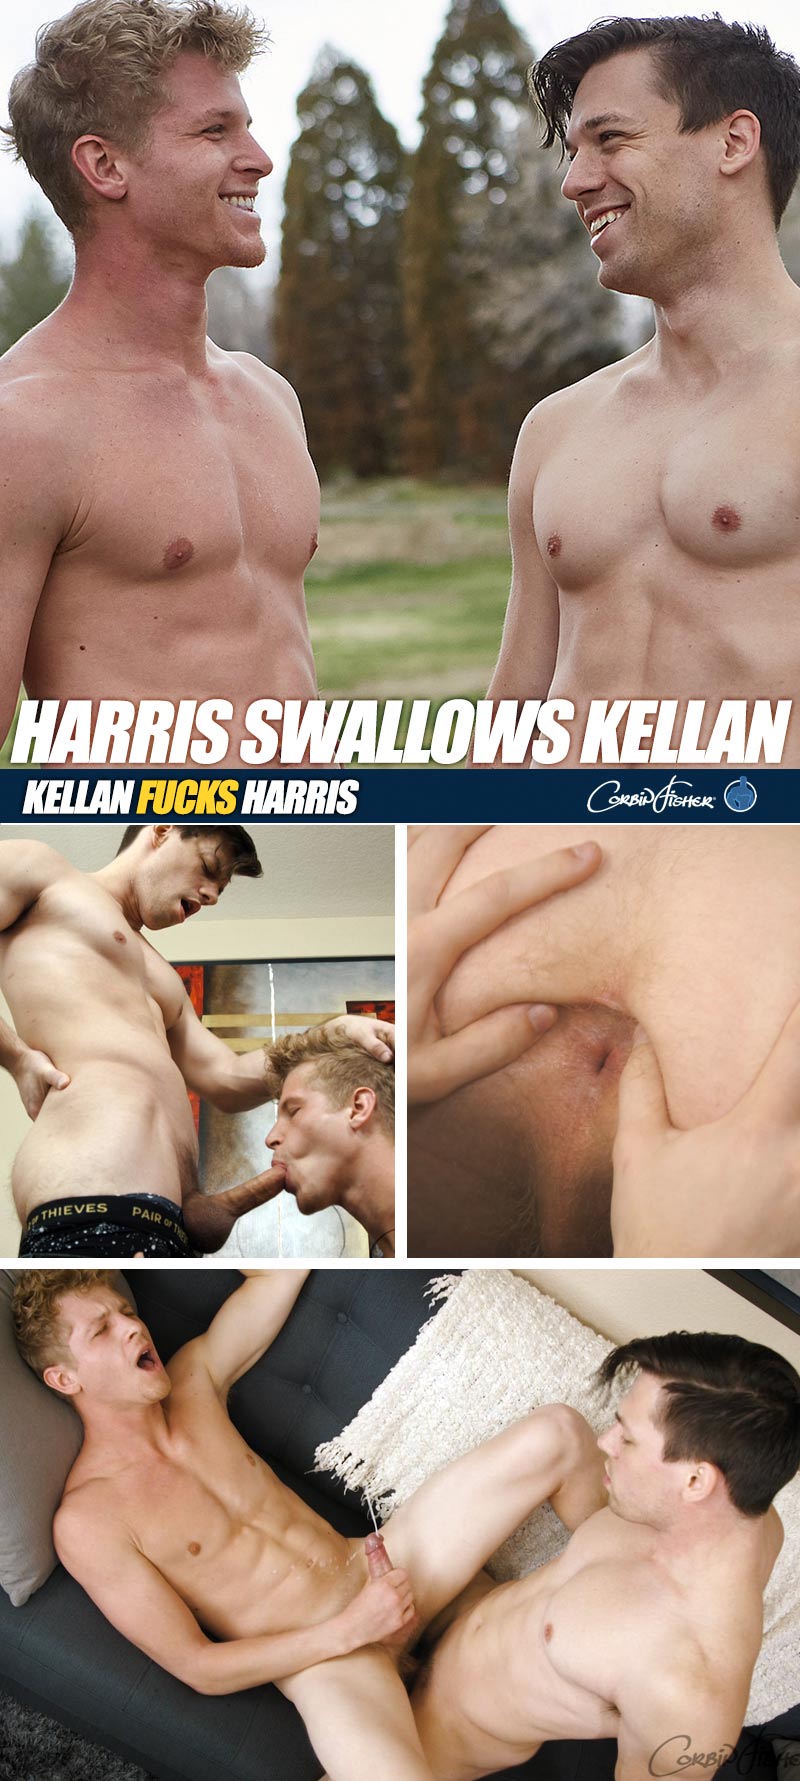 Harris Swallows Kellan (Bareback) at CorbinFisher